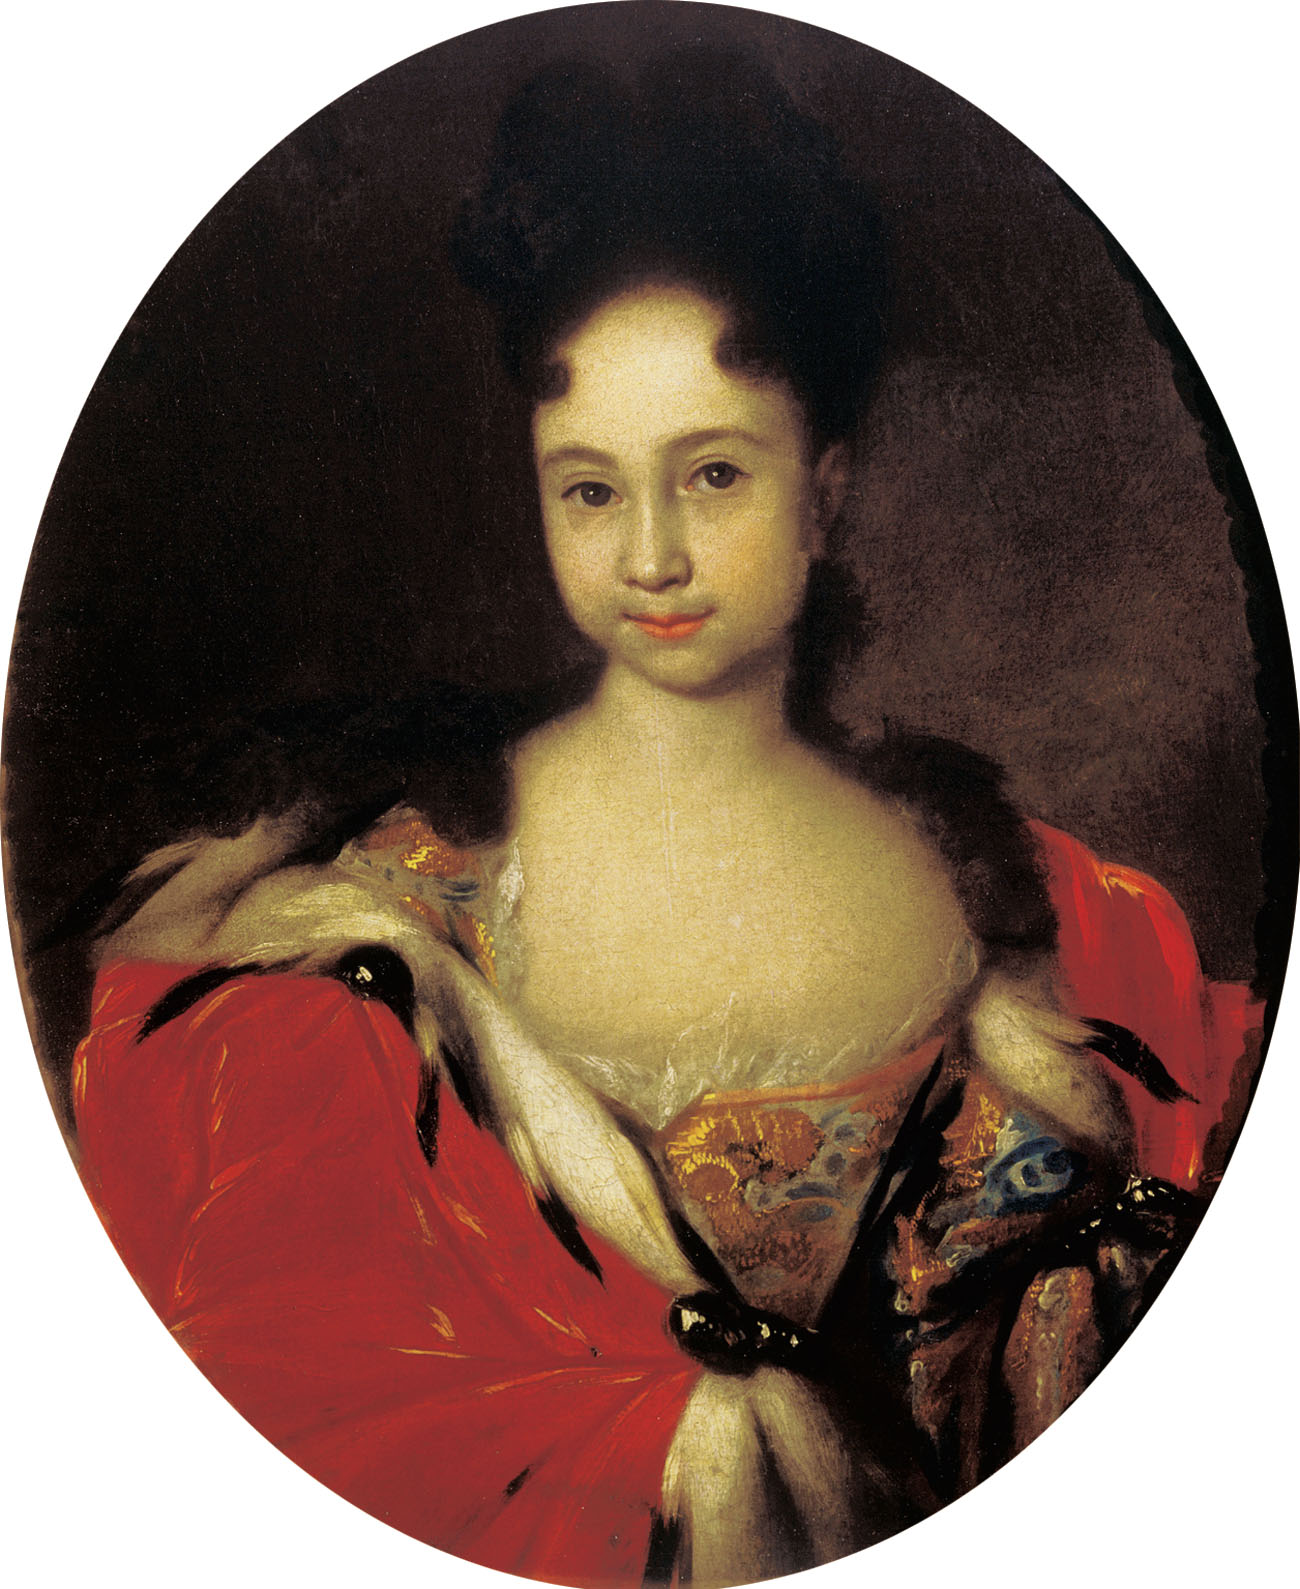 Иван Никитич Никитин. "Портрет цесаревны Анны Петровны". Не позднее 1716.